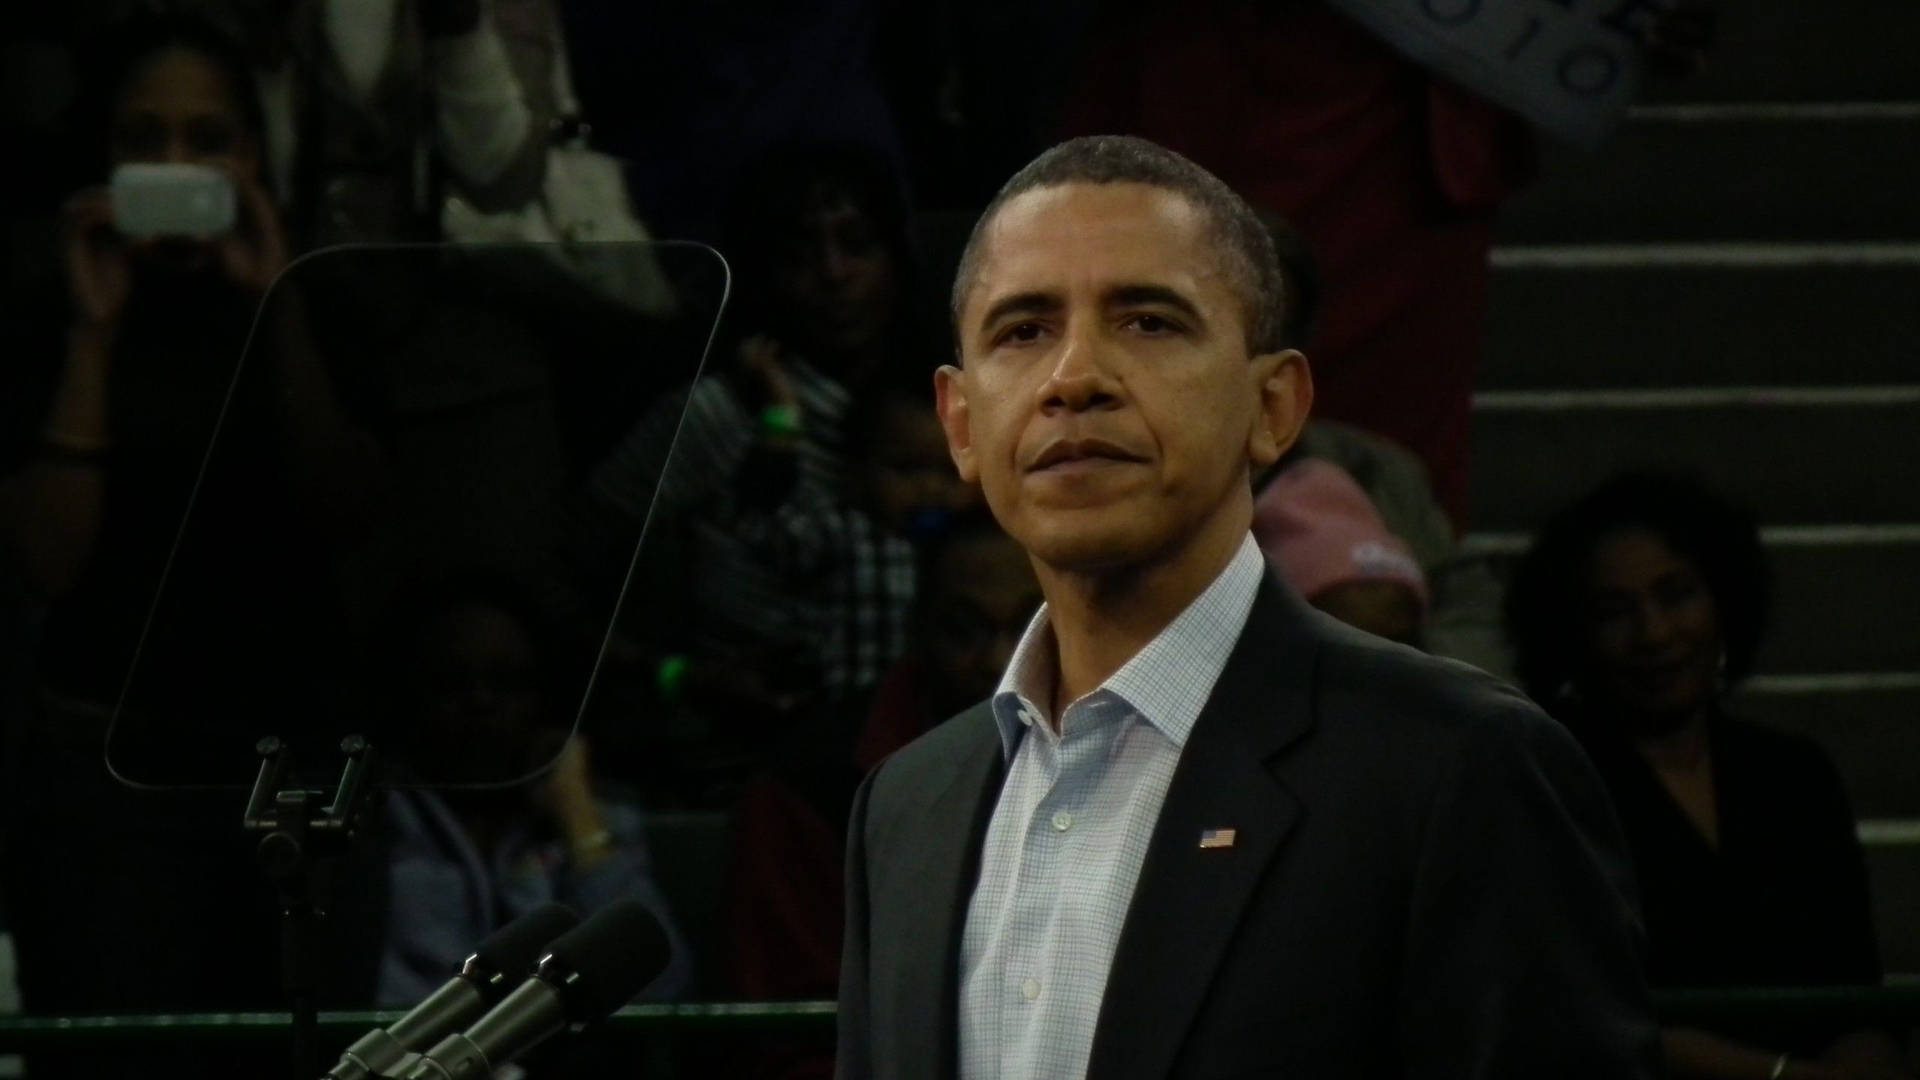 President Barack Obama Delivering Speech Background